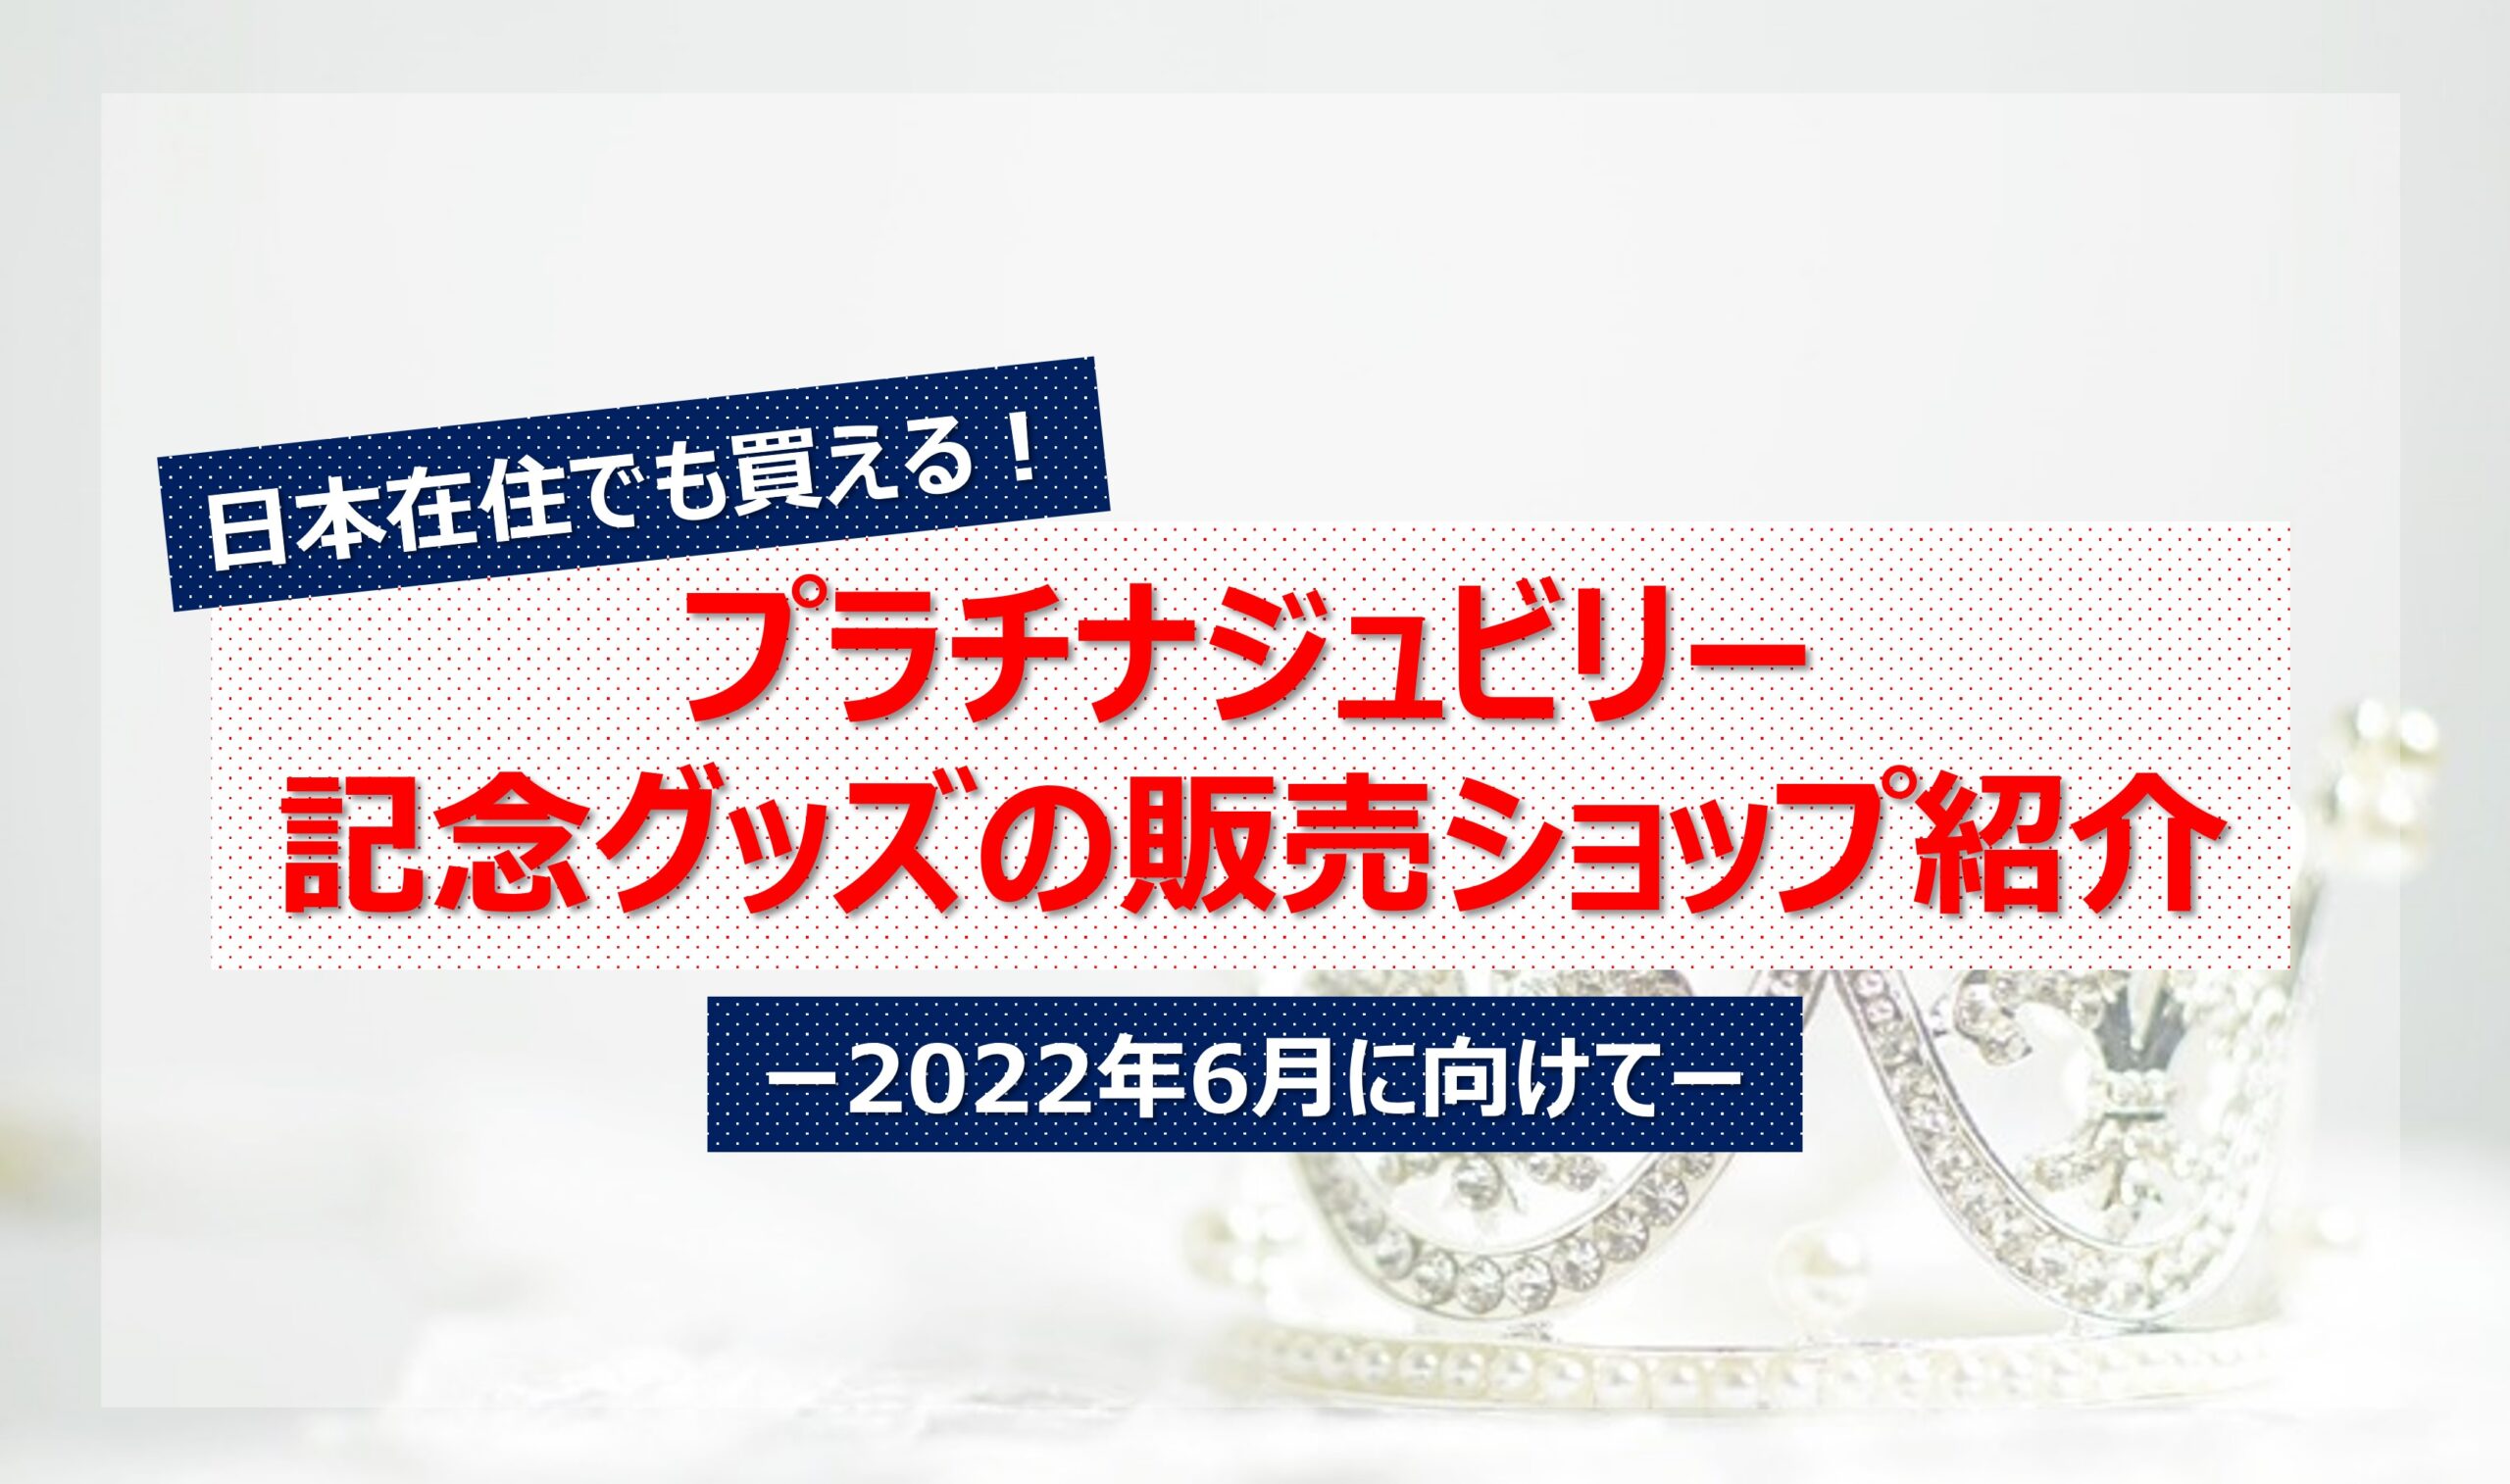 日本からプラチナジュビリーの記念グッズが買えるブランドとショップ 